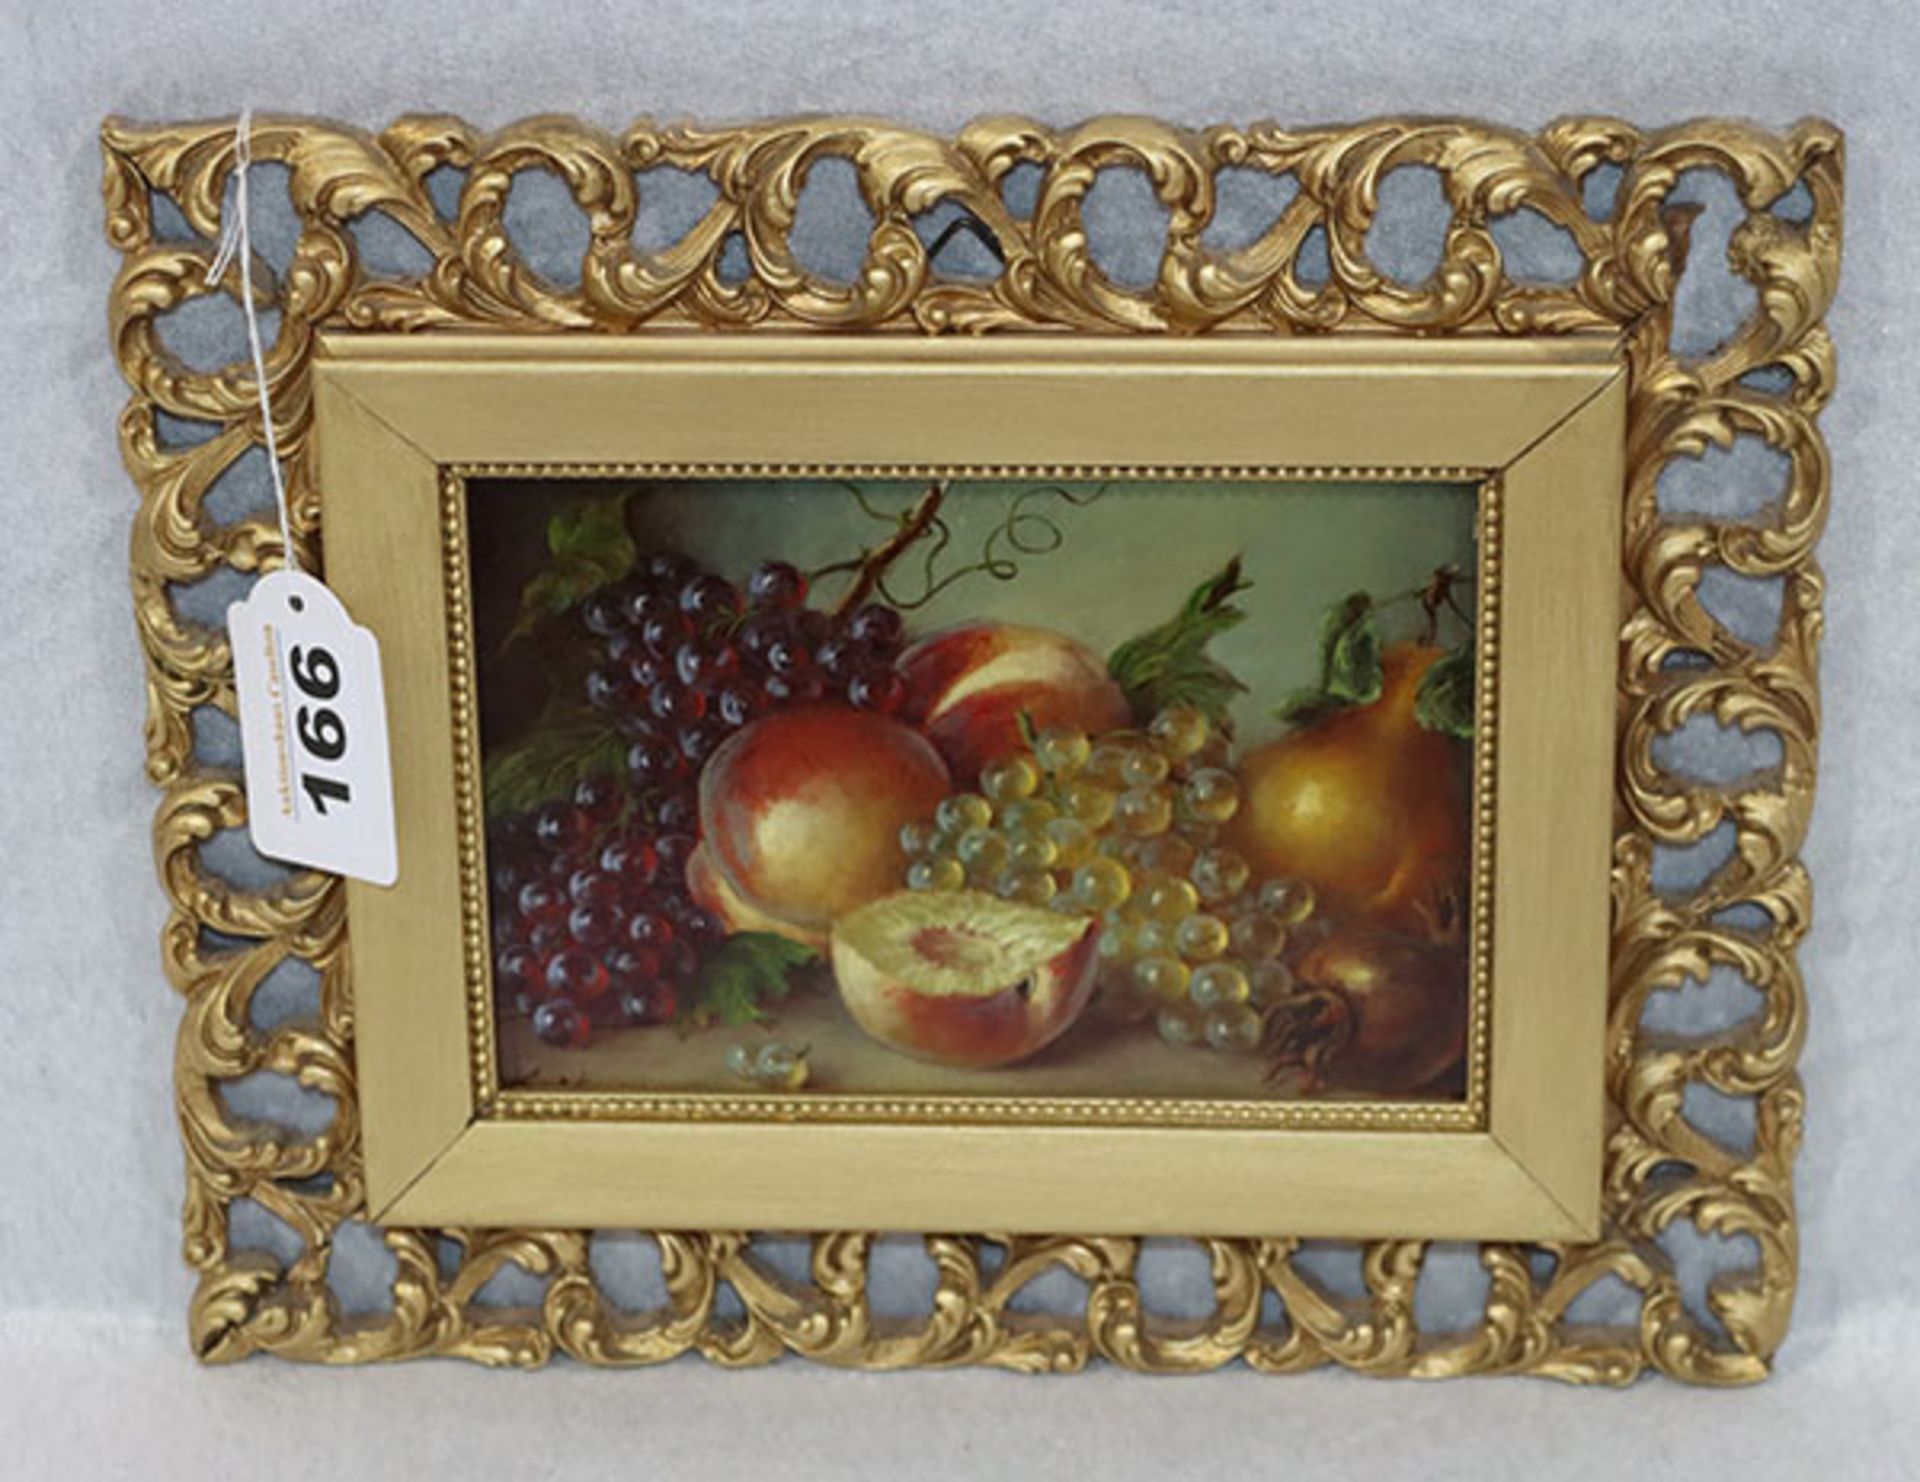 Gemälde ÖL/Hartfaser 'Früchtestillleben', undeutlich monogrammiert, gerahmt, incl. Rahmen 22 cm x 26